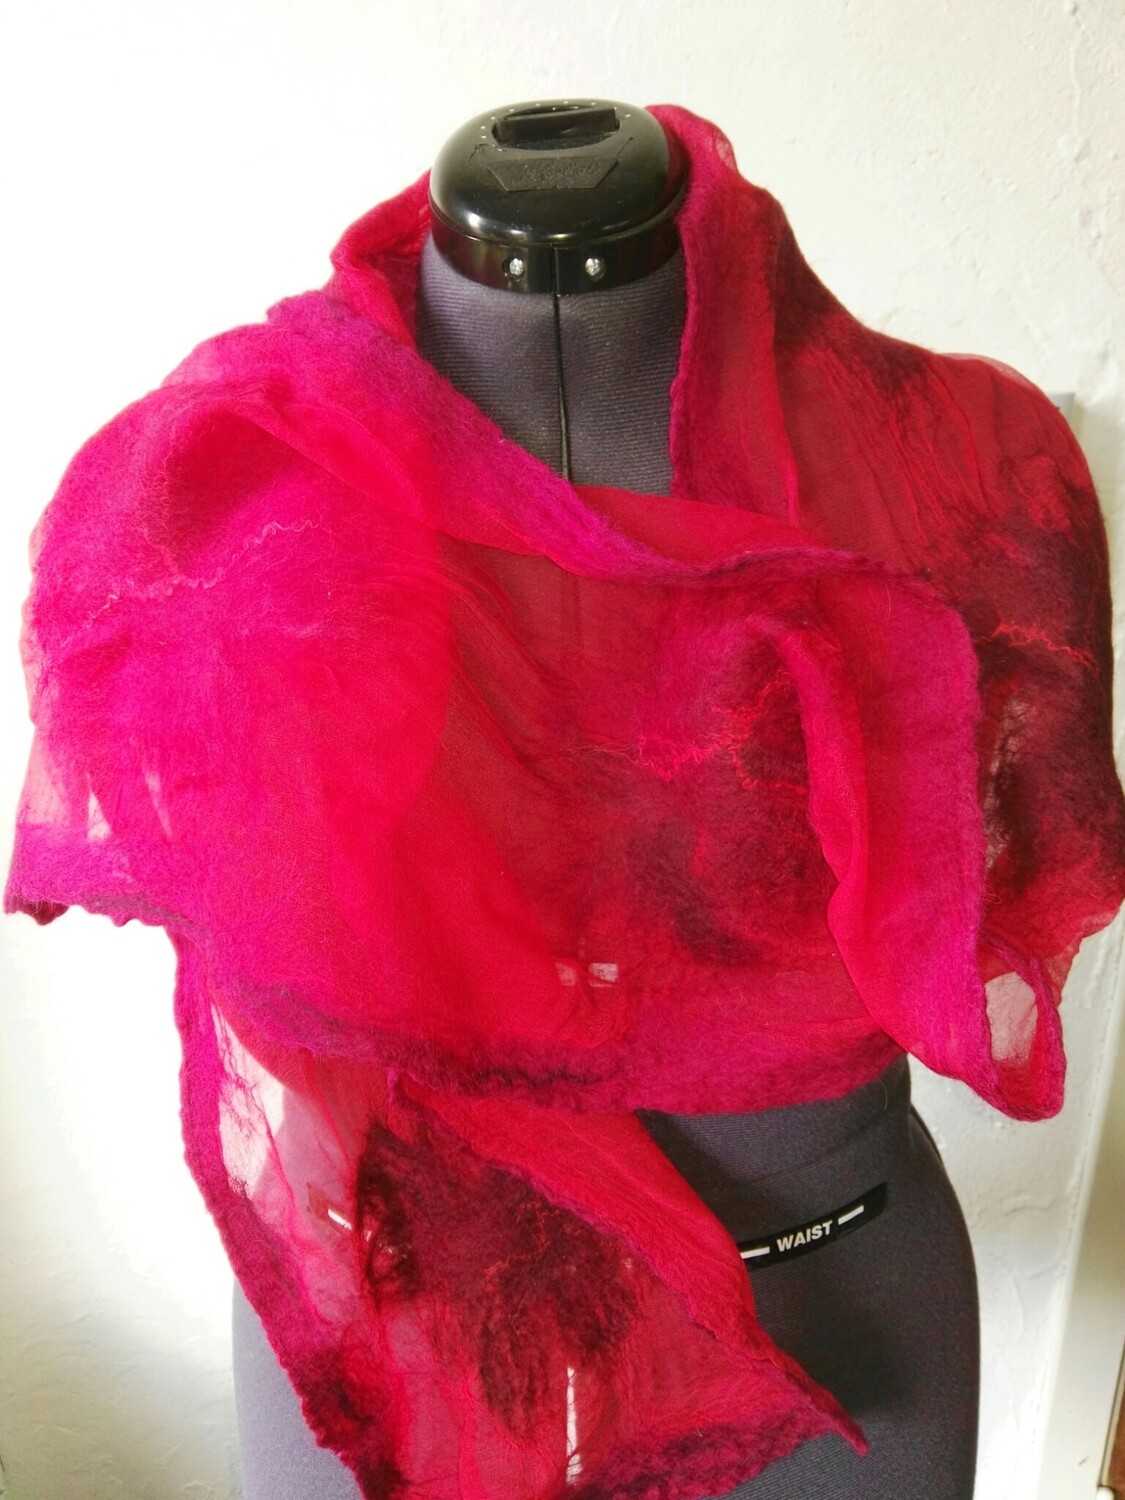 Rode sjaal in nunovilt (vilt op zijde).